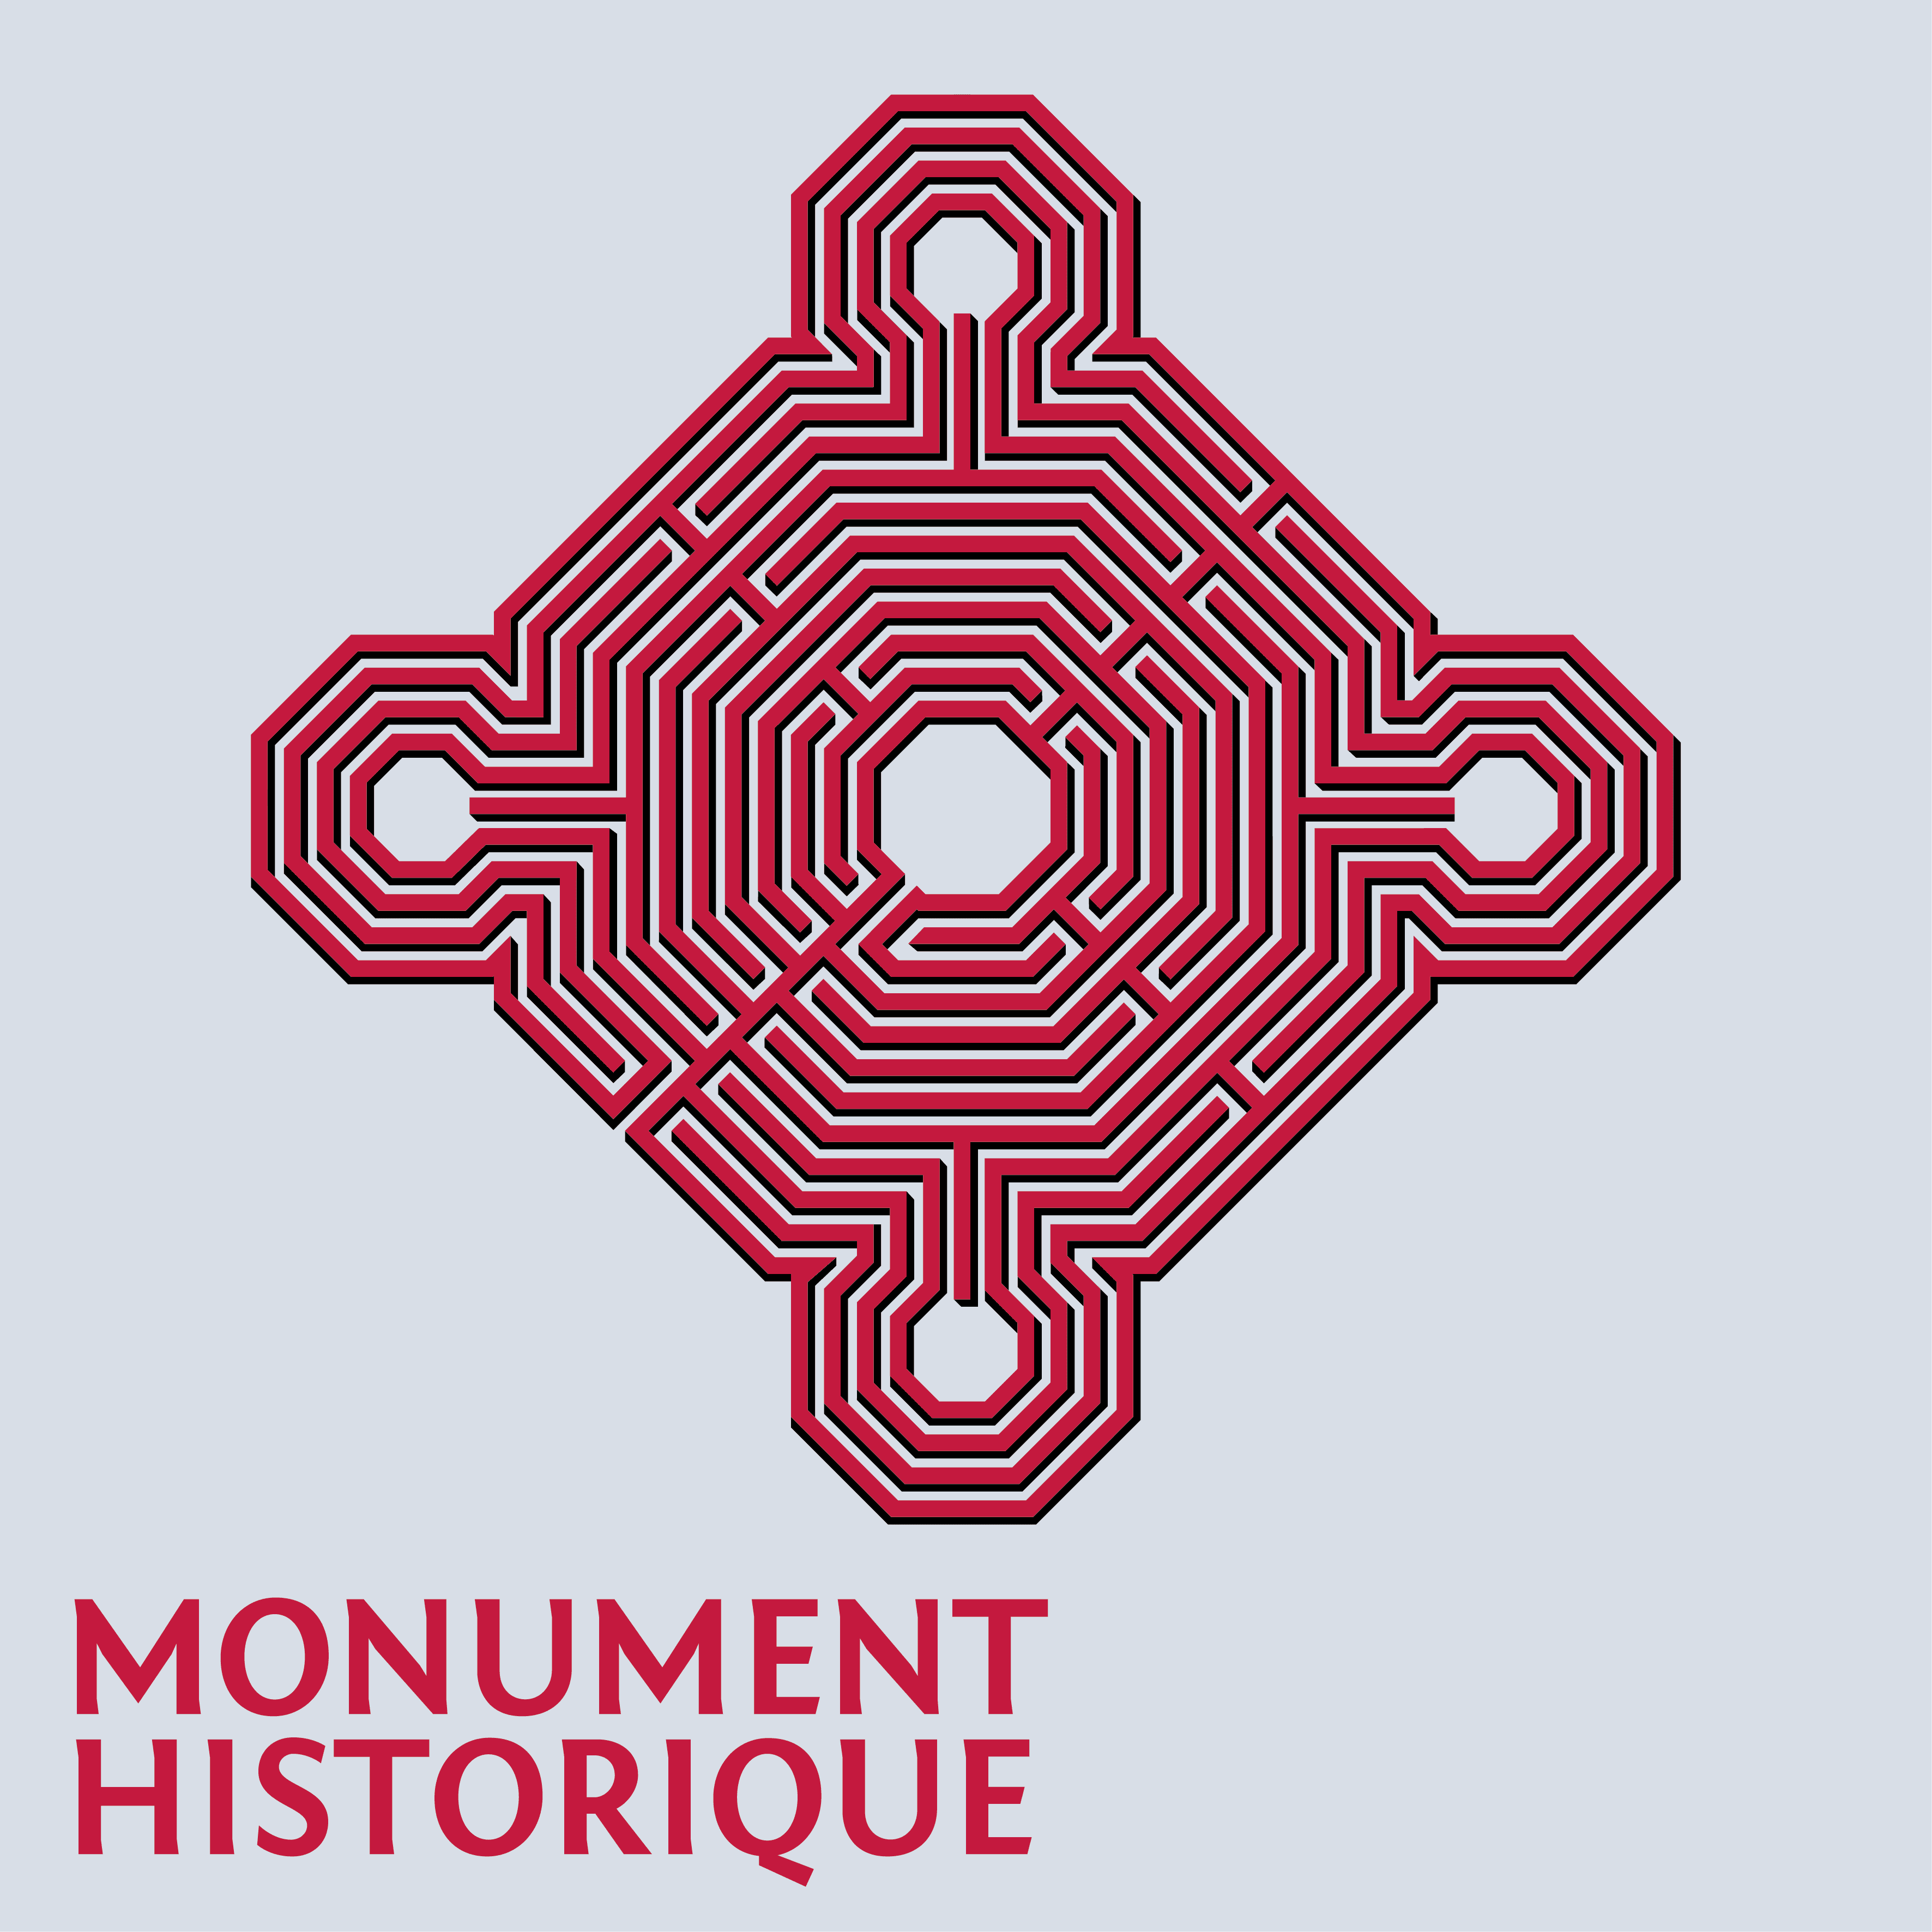 Plaque-Monument-historique-2017.png